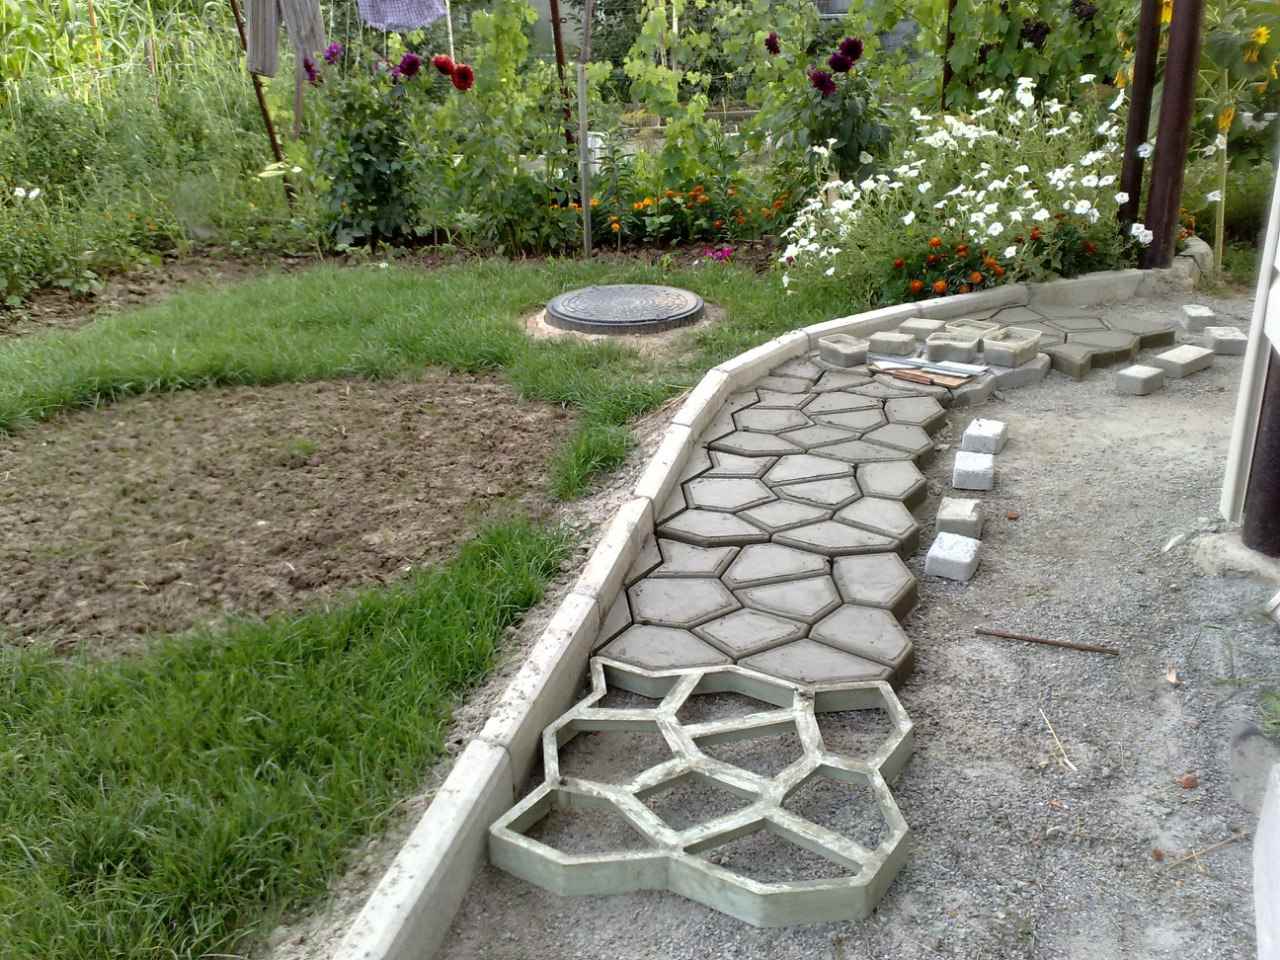 de optie om heldere tuinpaden te gebruiken bij het ontwerp van de tuin